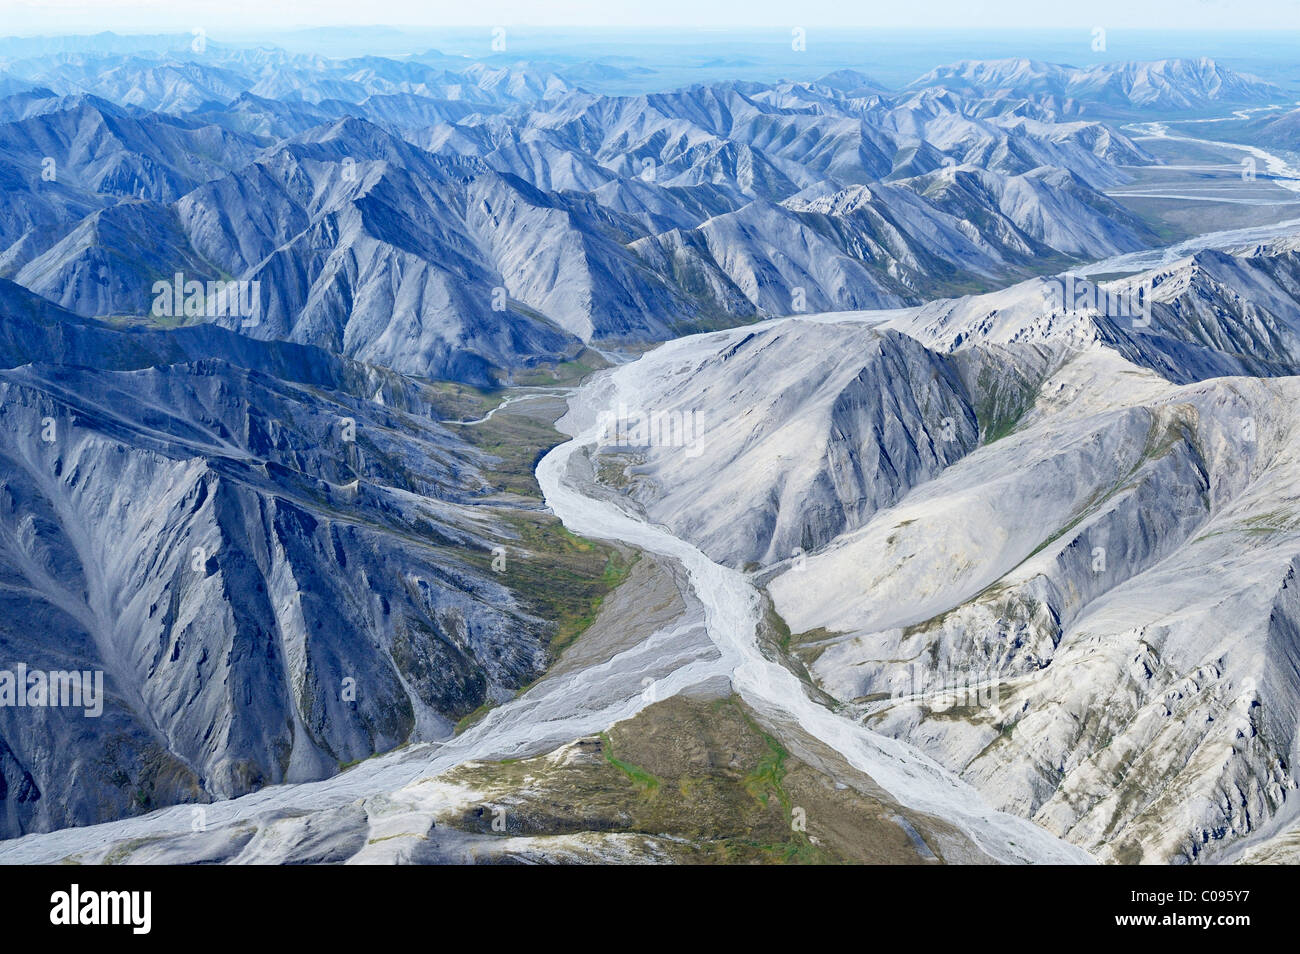 Vue aérienne de la rude Montagne Philip Smith partie de la Brooks Range dans la réserve faunique nationale de l'Arctique, l'Alaska, l'été, HDR Banque D'Images